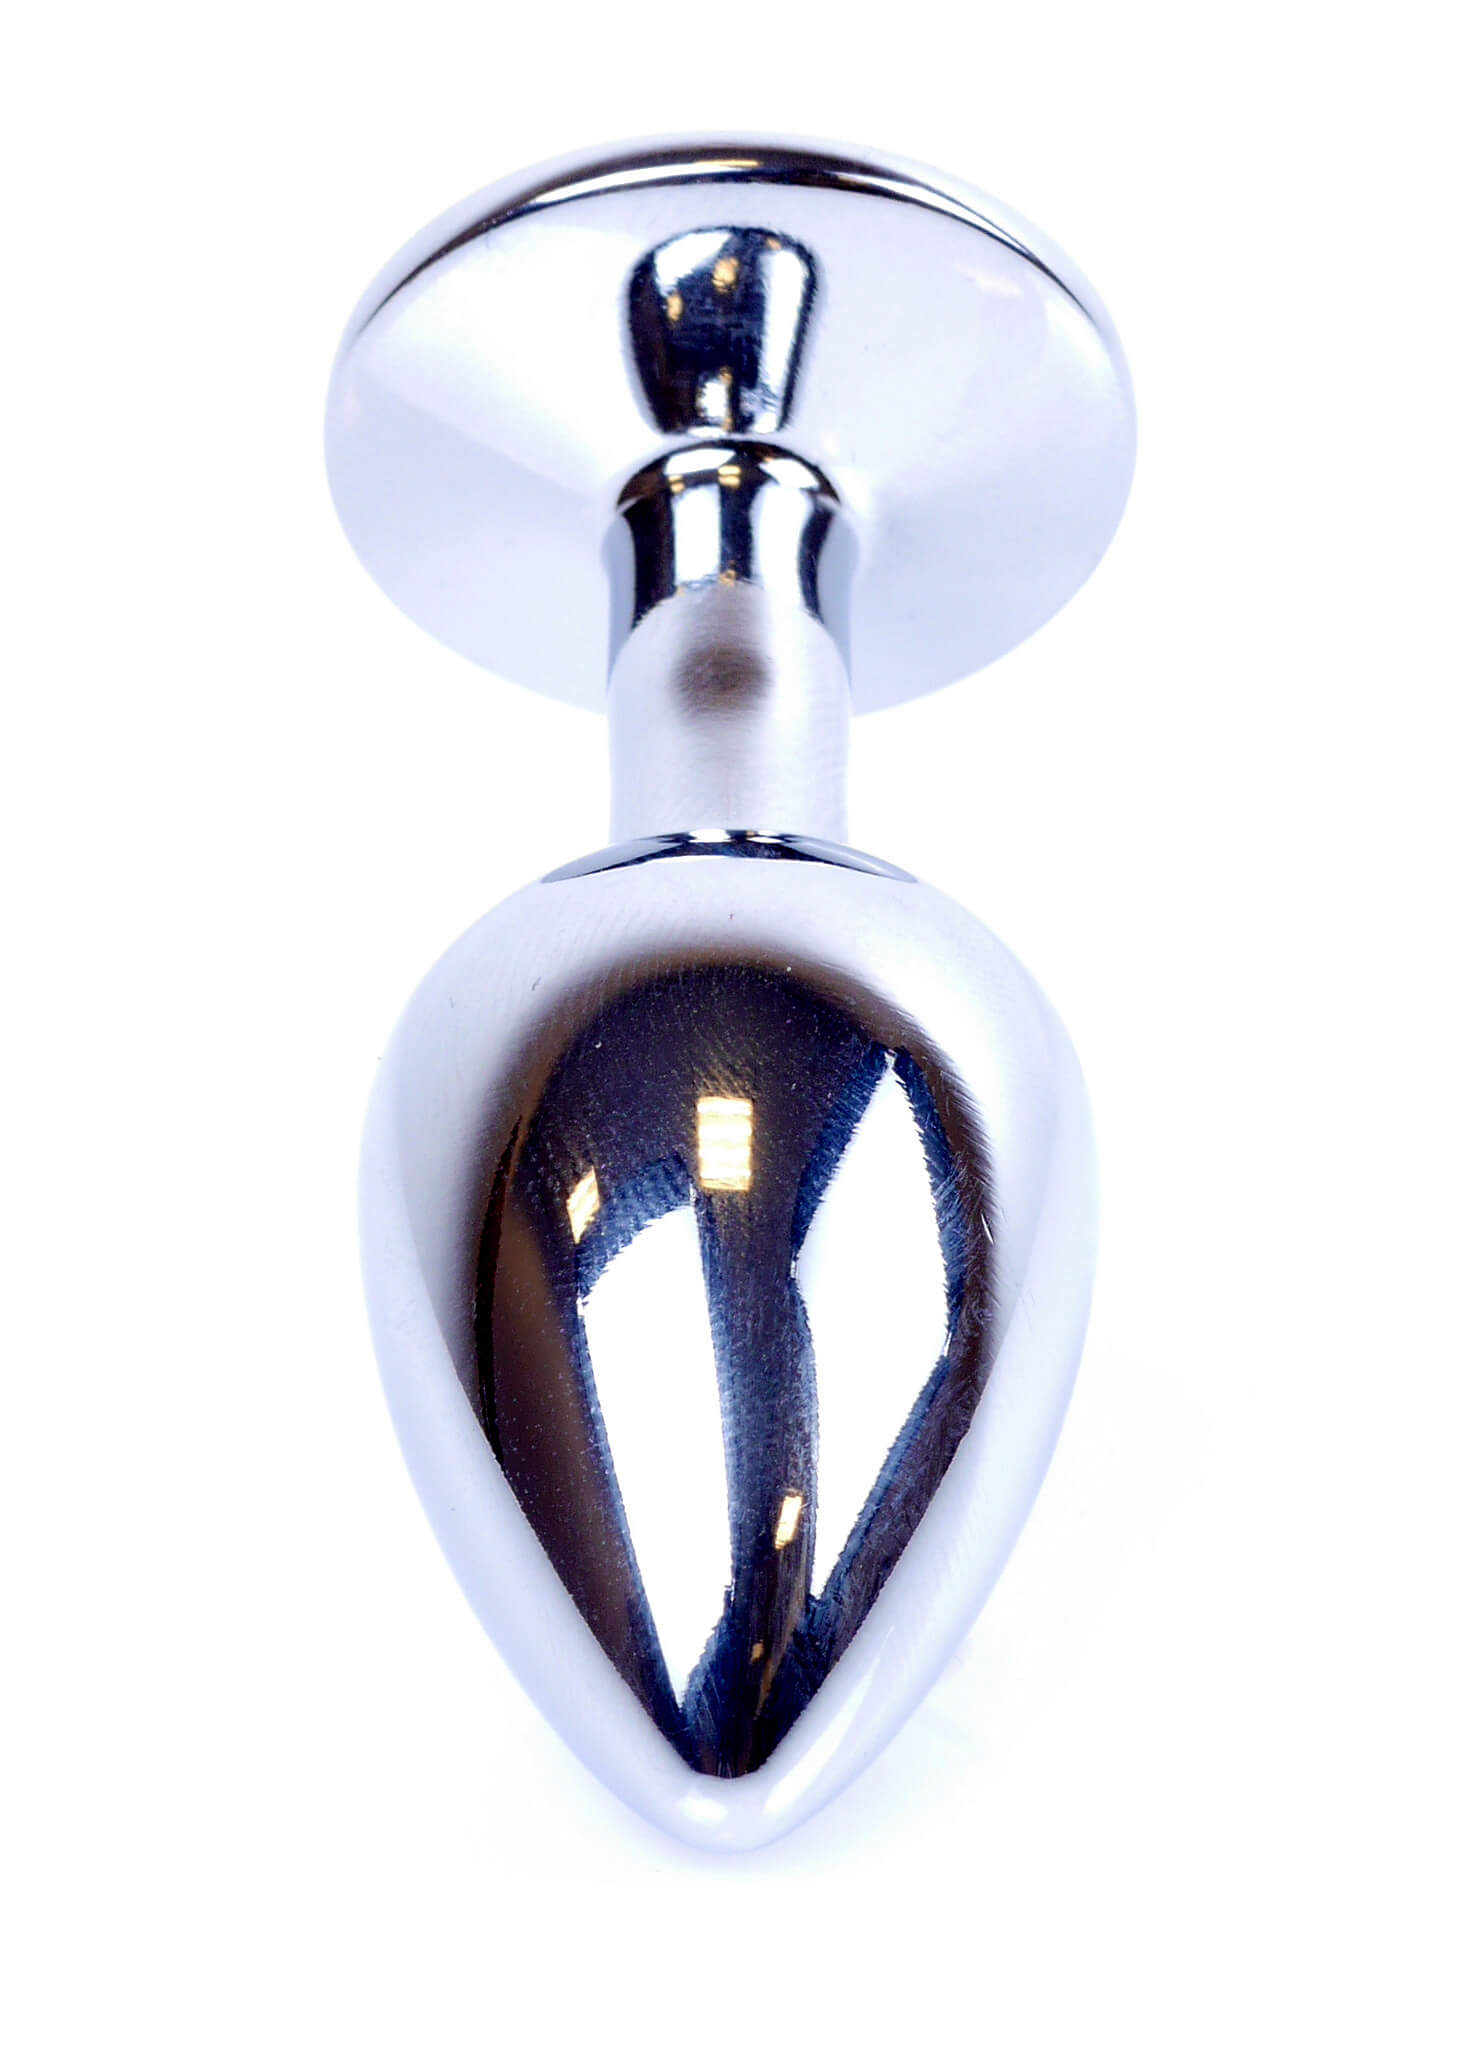 Boss Series Jewellery Silver Plug ROSE - strieborný análny kolík s drahokamom 7 x 2,7 cm